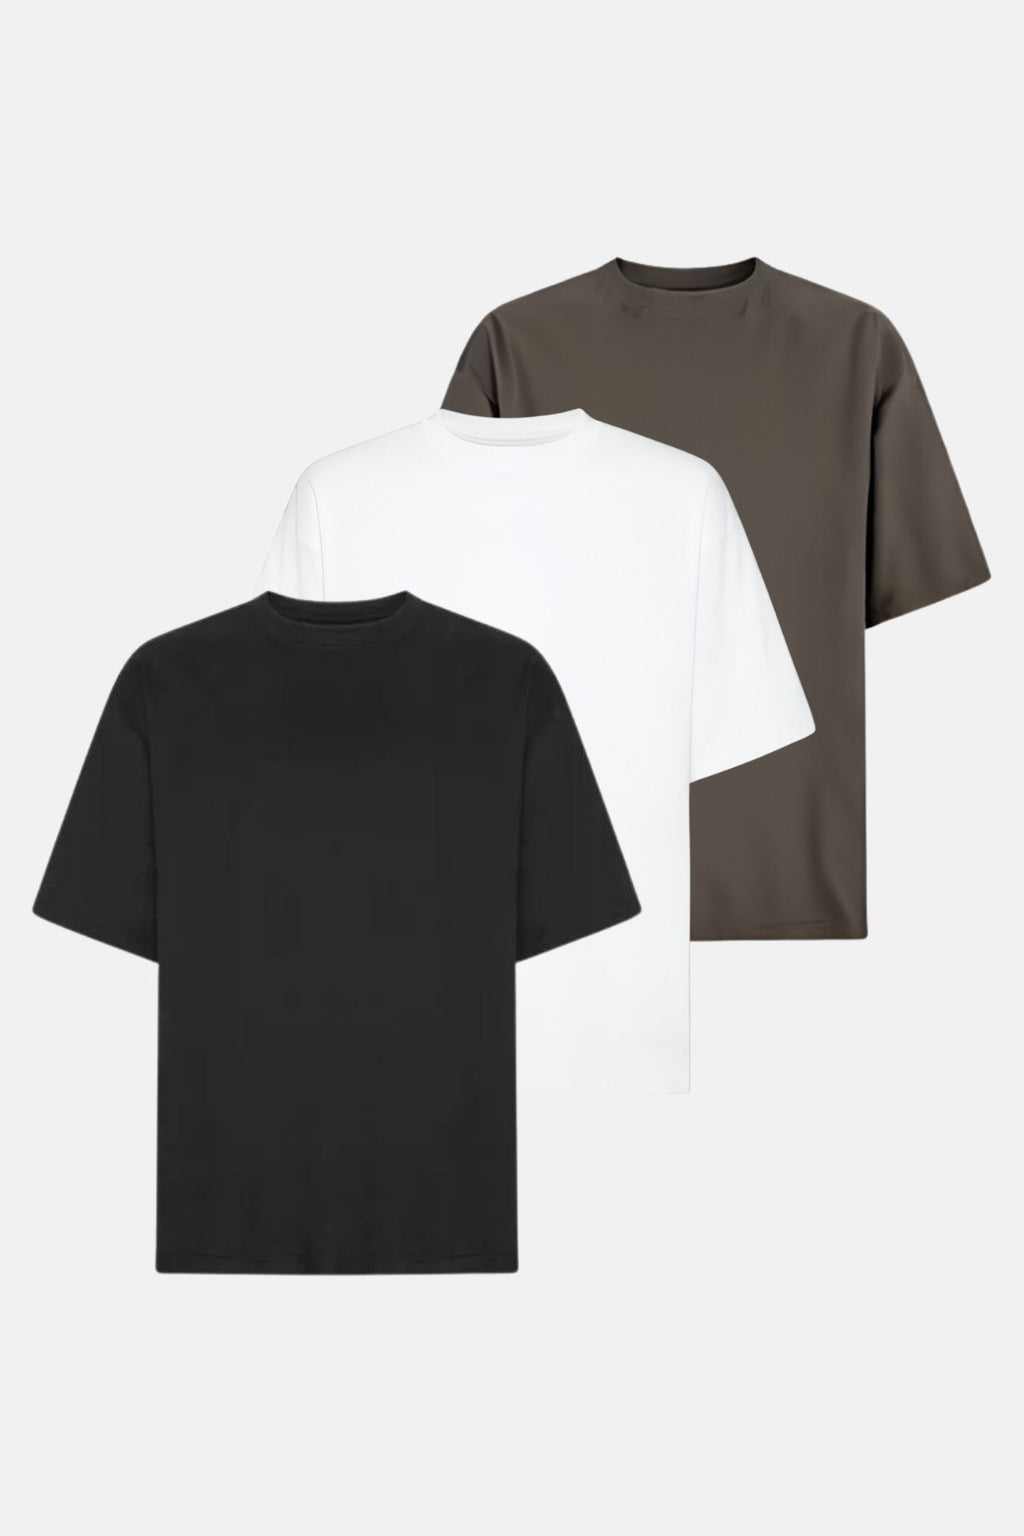 Boxfit T-shirt - Package Deal (3 pcs.)